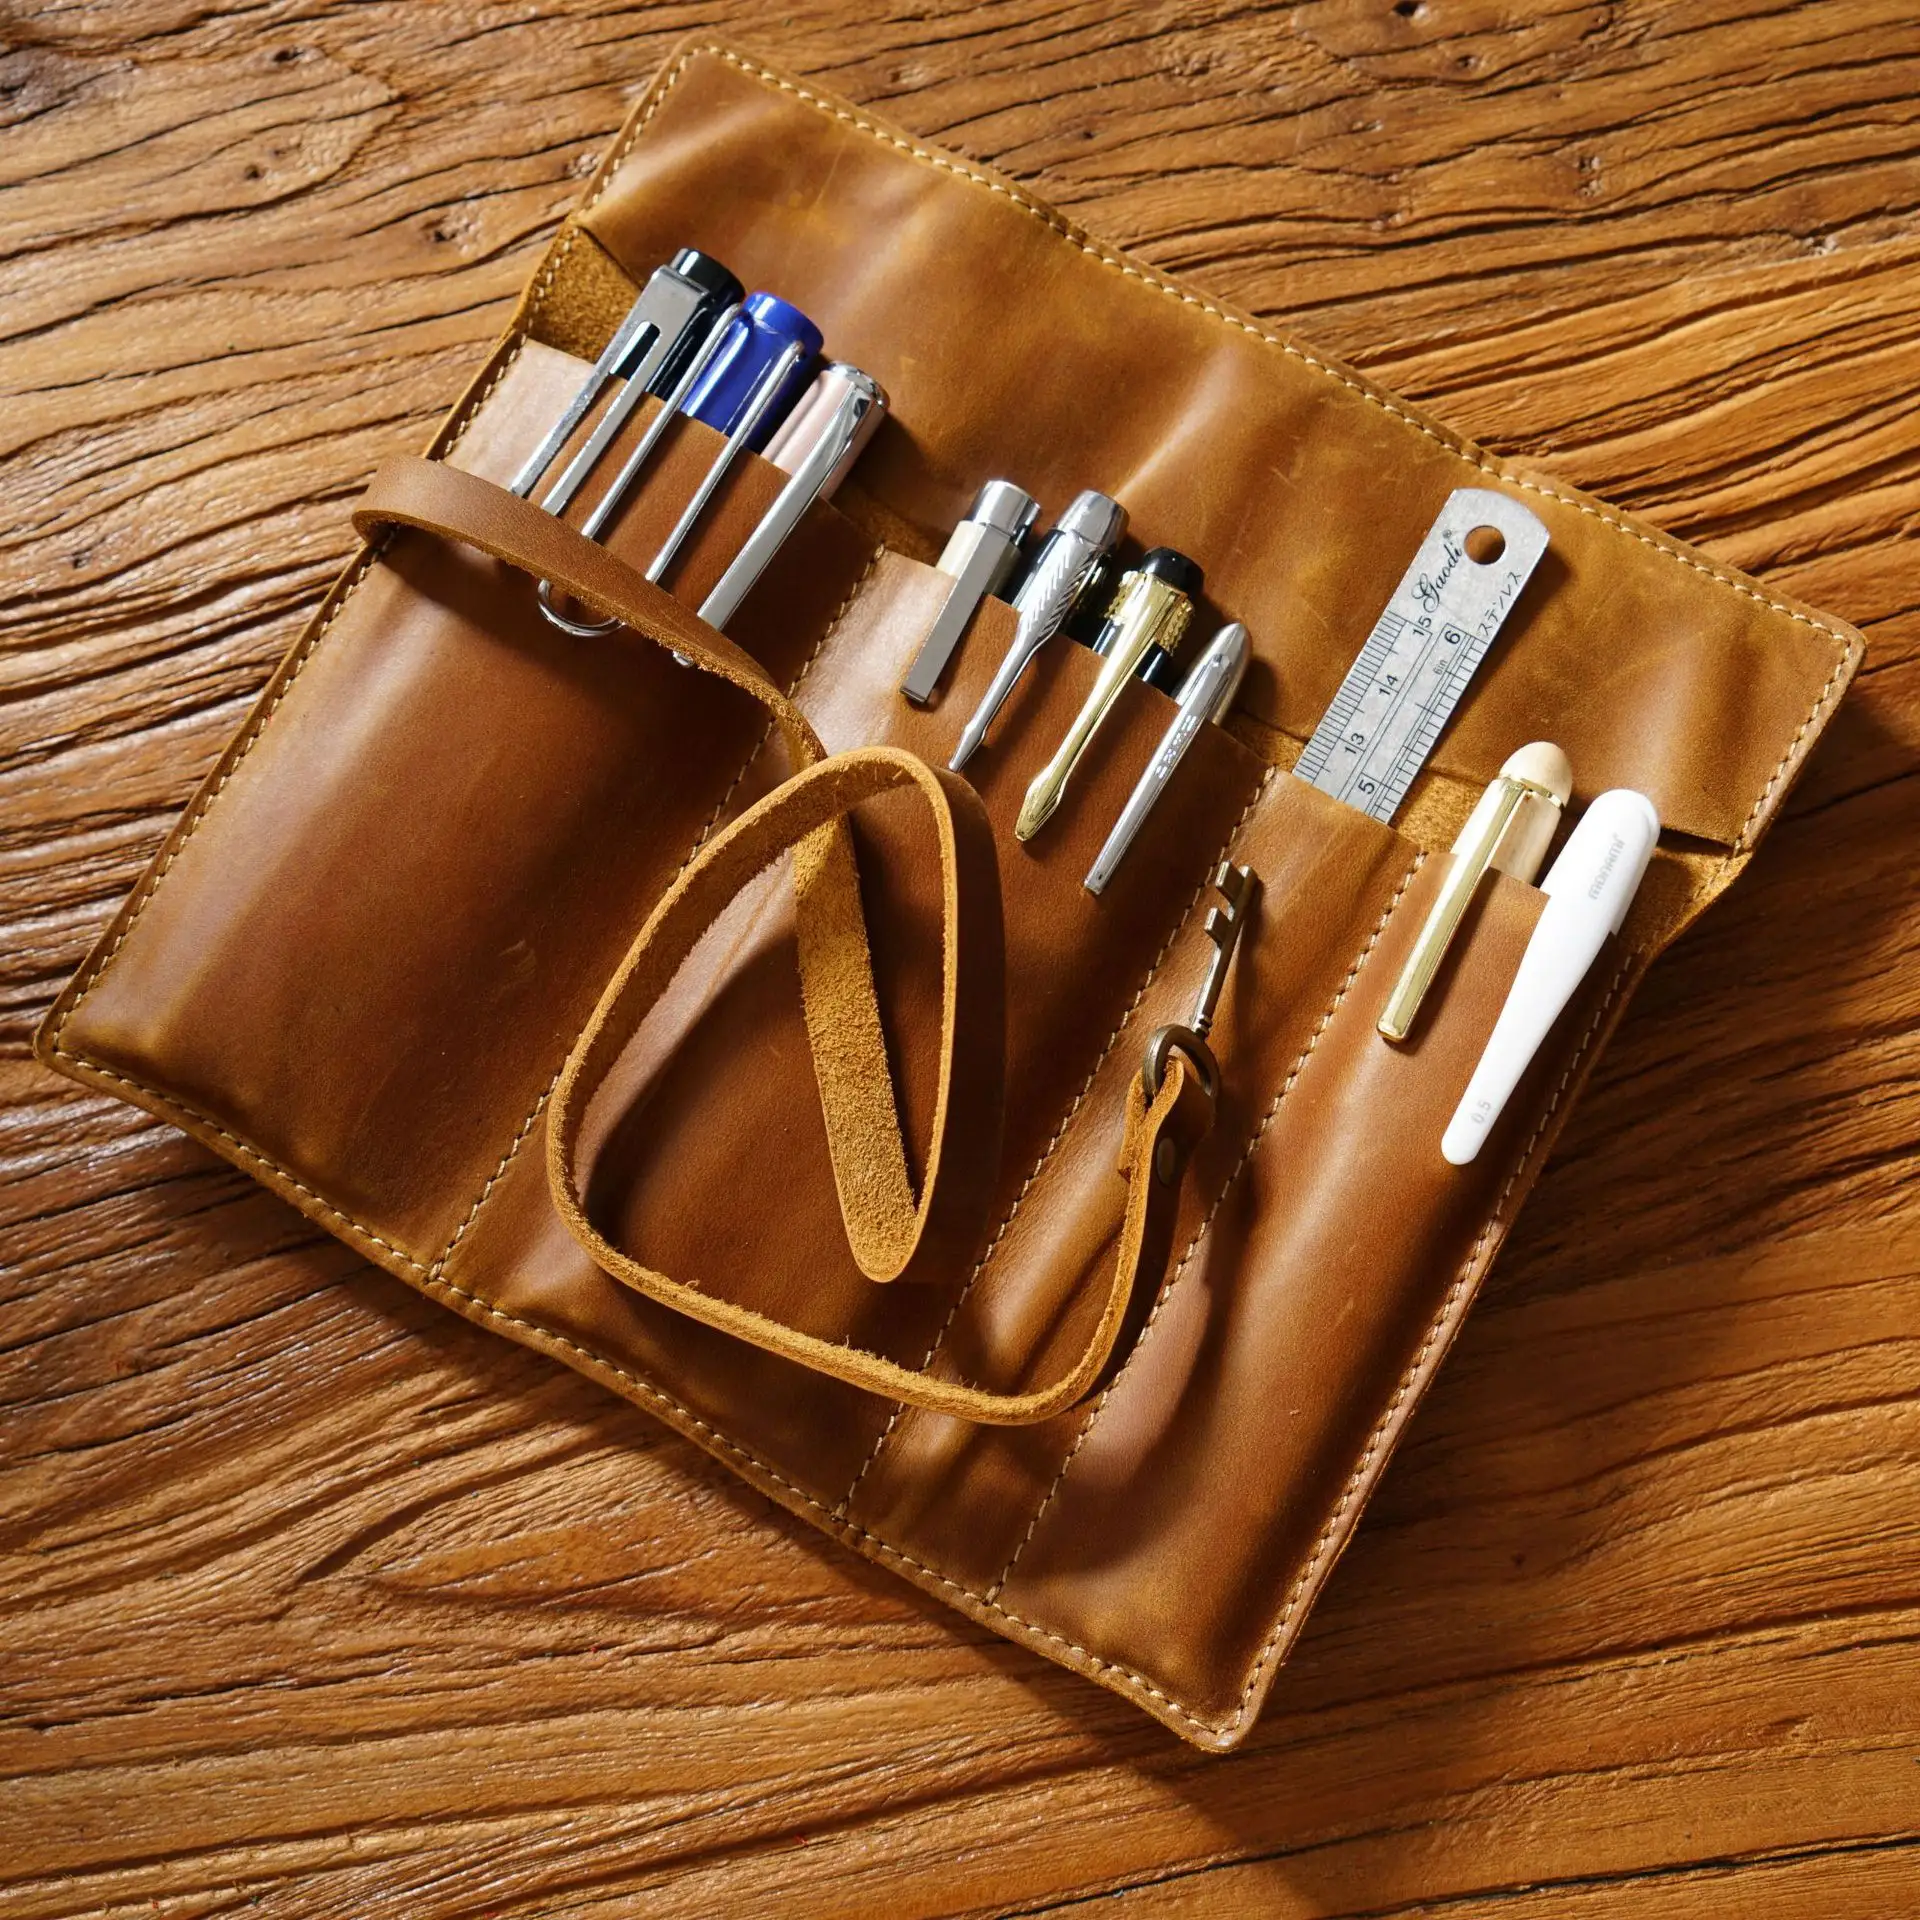 ستارة قلم من جلد البقر الطبقة العلوية كلاسيكية حقيبة تخزين قلم من الجلد الطبيعي مصنوعة يدويًا متعددة الوظائف علبة أقلام مخددة